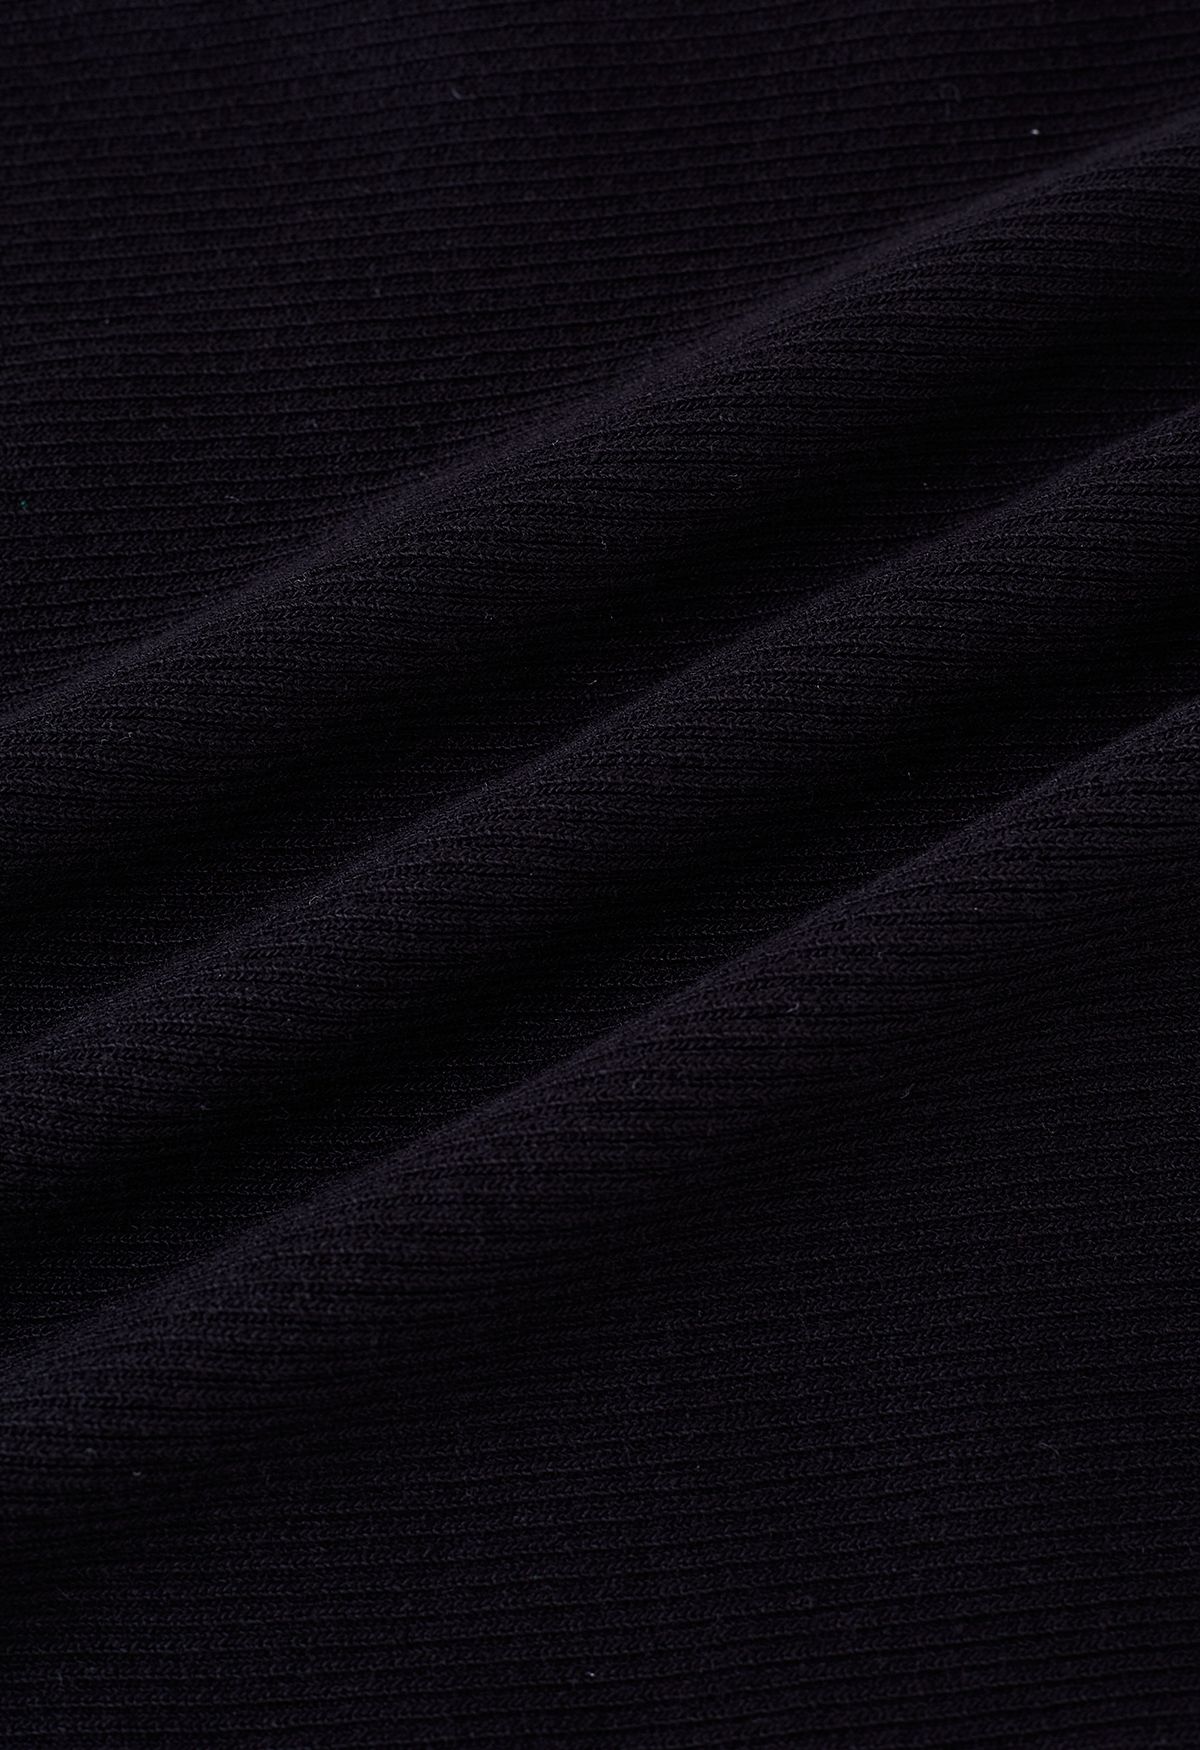 بلوزة محبوكة بربطة عنق مضلعة باللون الأسود